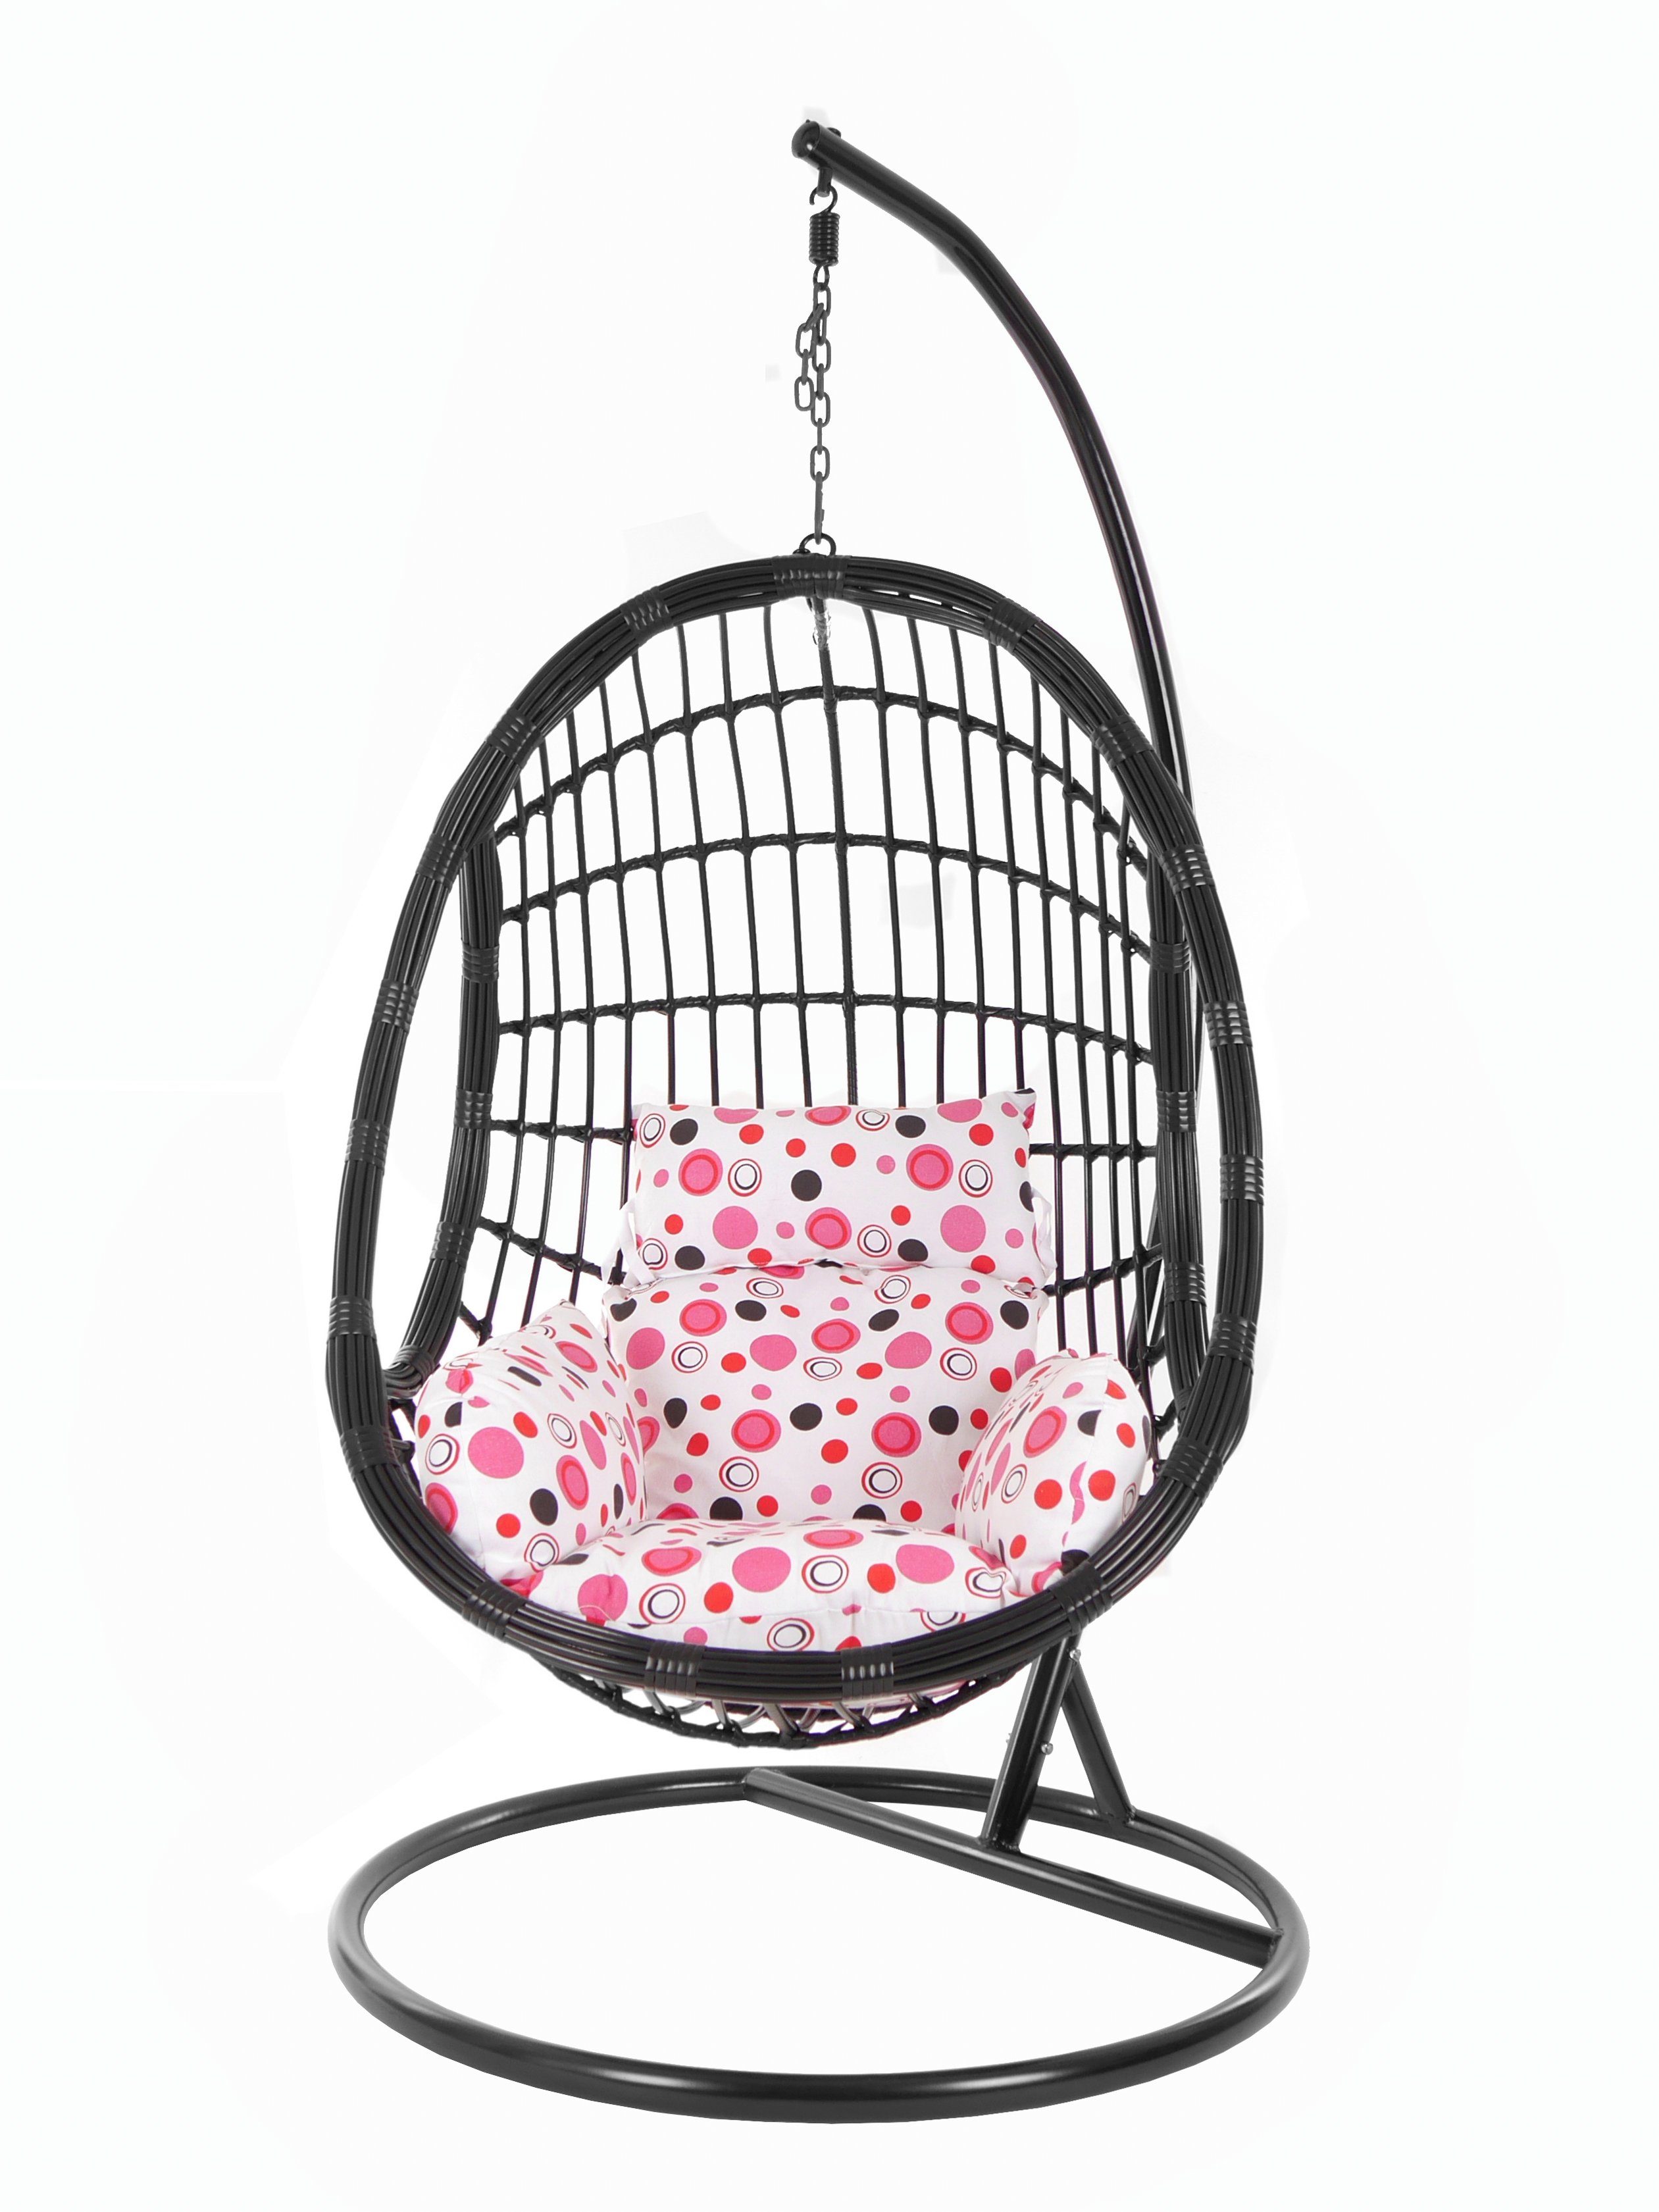 KIDEO Hängesessel PALMANOVA black, und dot) Schwebesessel, mit (3039 gepunktet lemonade rosa Kissen, Schwarz, Chair, Hängesessel Loungemöbel, Muster Gestell Swing